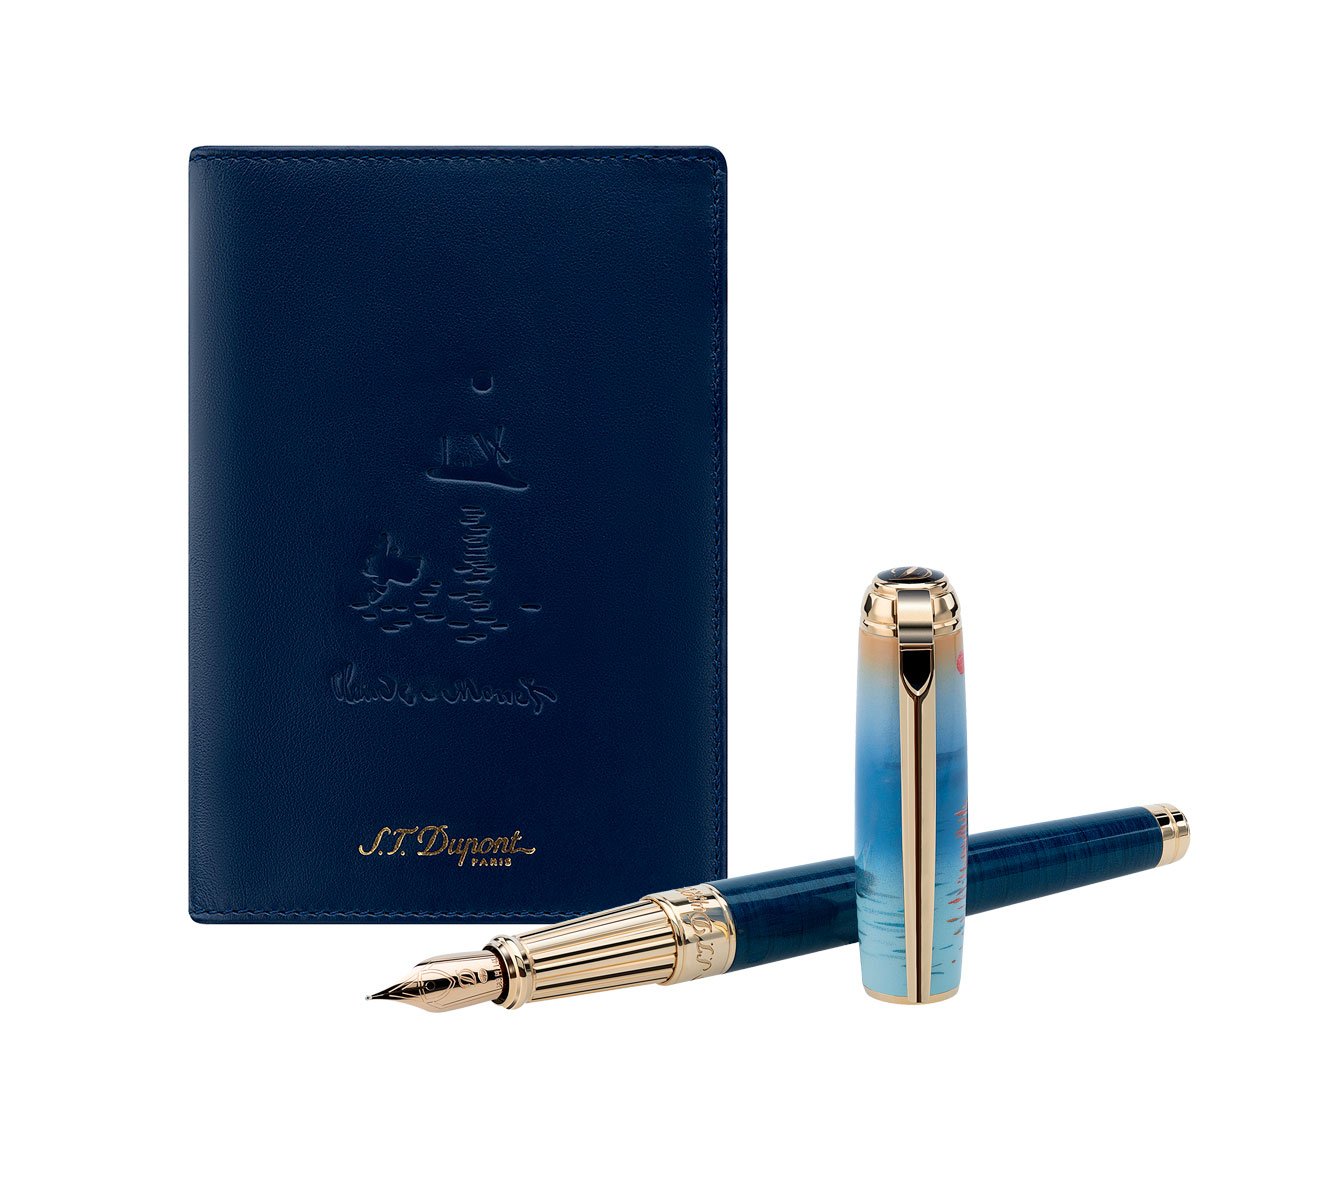 Подарочный набор: ручка и обложка для паспорта S.T. Dupont Monet 410049LC2 - фото 2 – Mercury